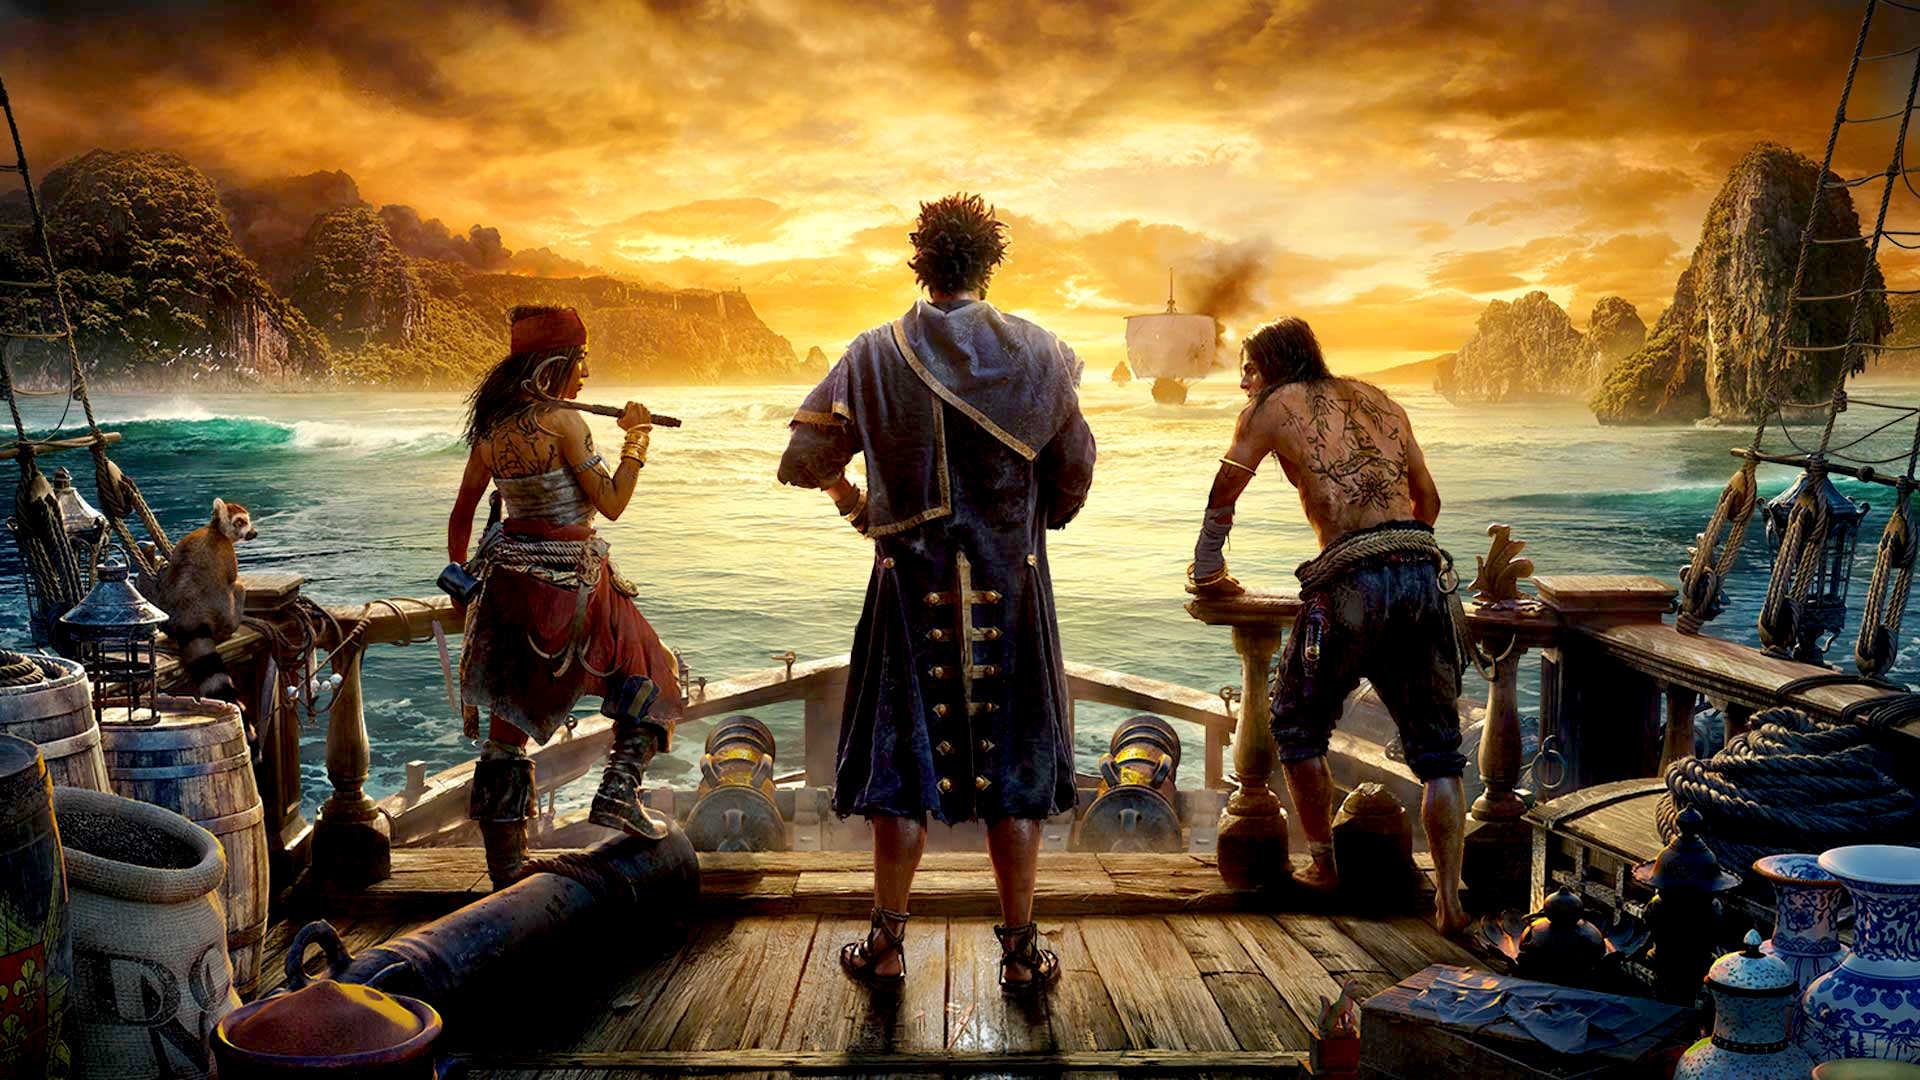 Trzej piraci na pokładzie statku patrzą w stronę morza, o wschodzie słońca z burzowymi chmurami na tle malowniczych skał.